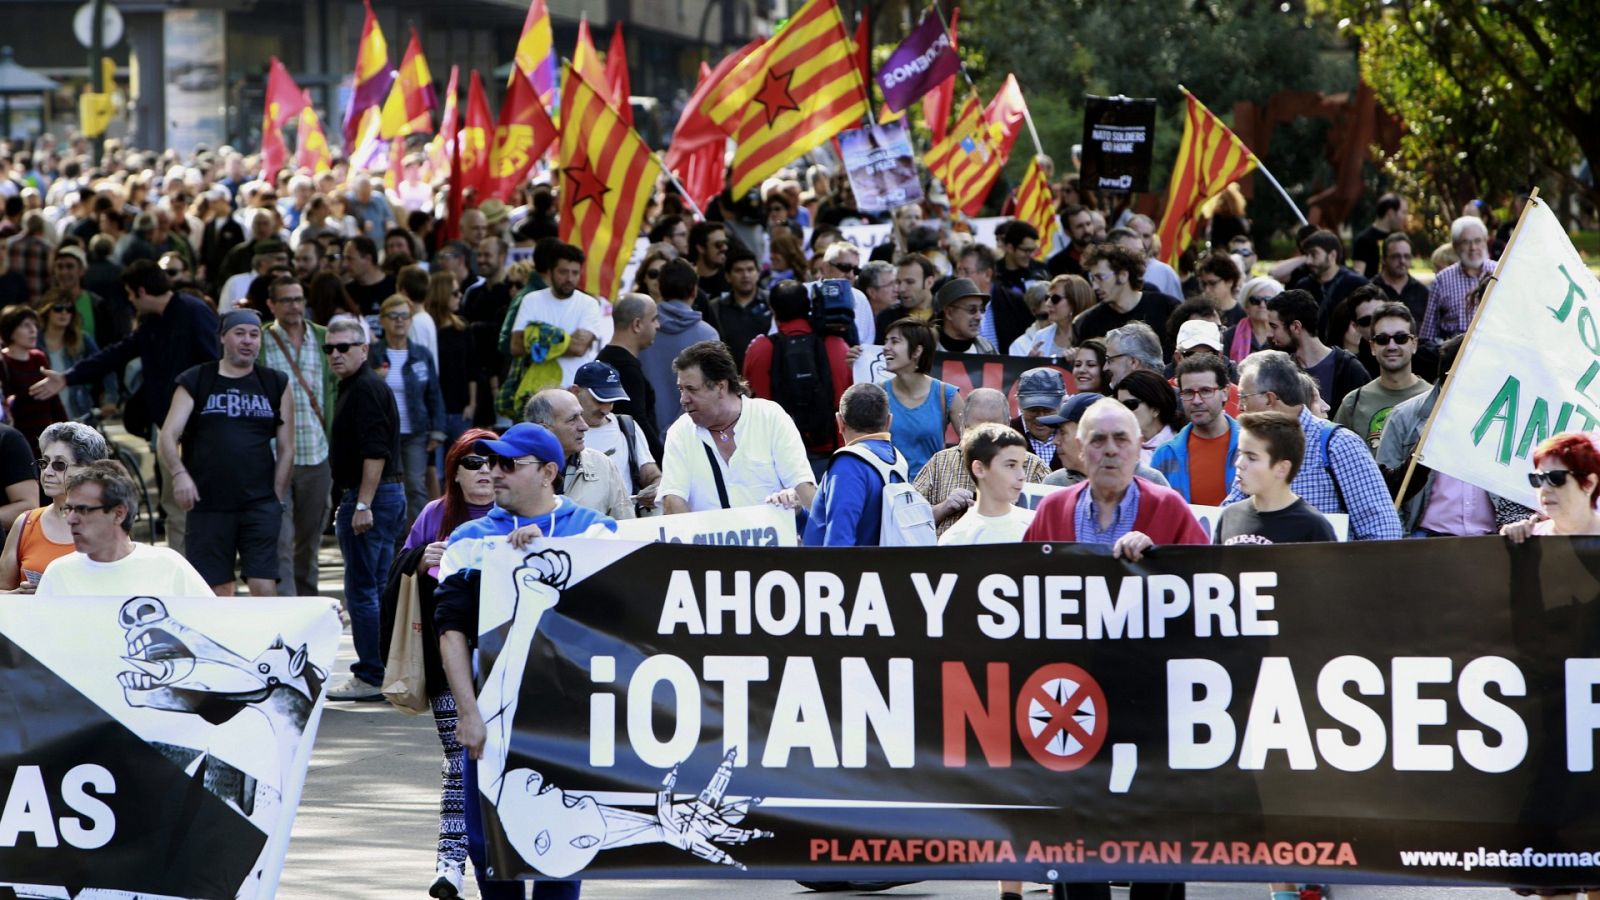 Manifestación contra la OTAN en Zaragoza, en una imagen de archivo